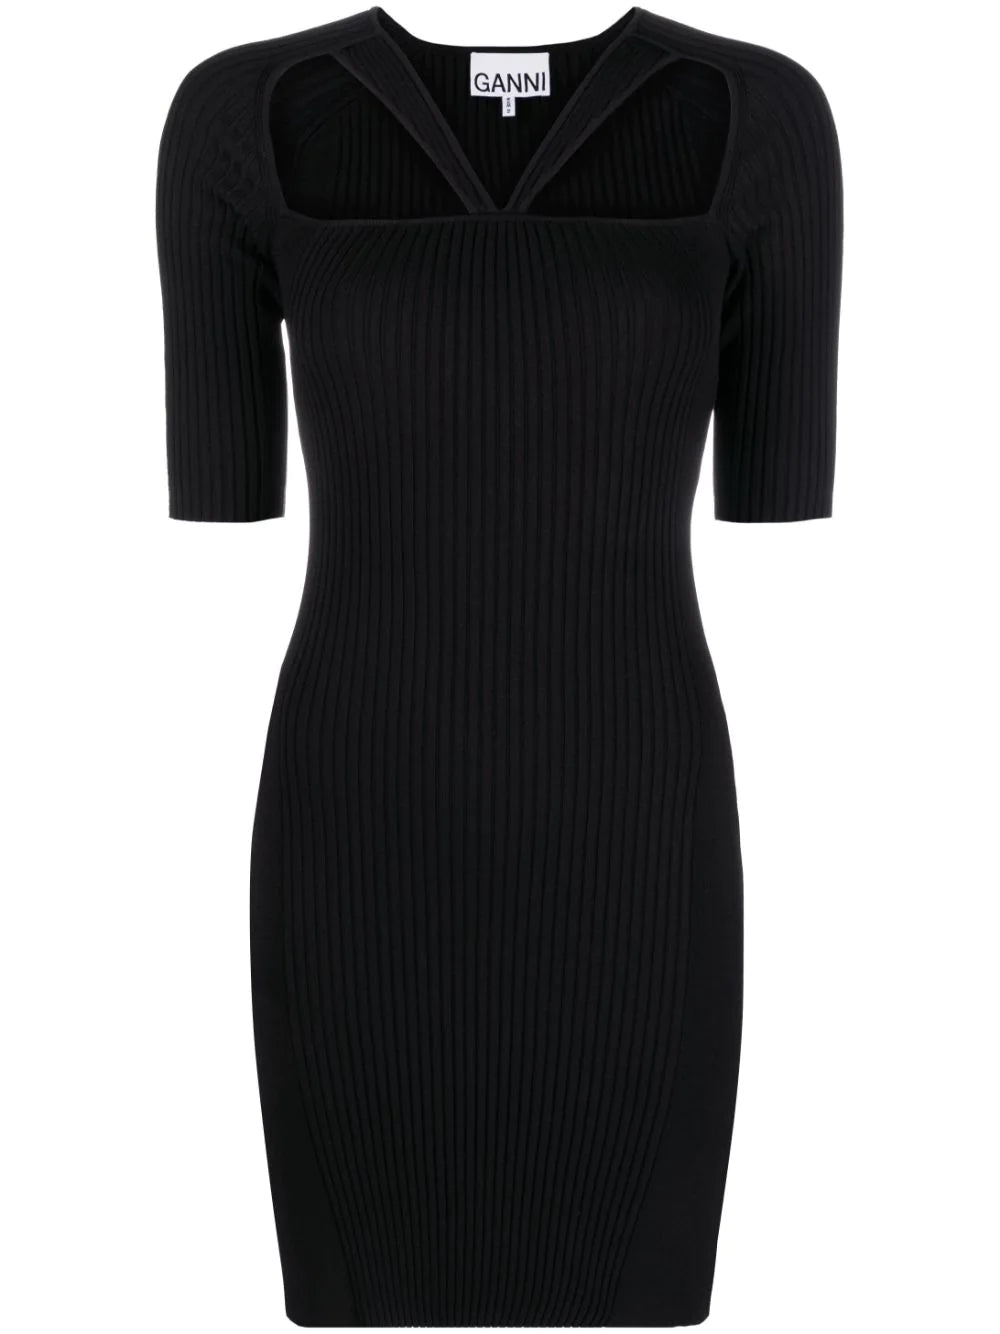 Ribbed knit mini dress, black